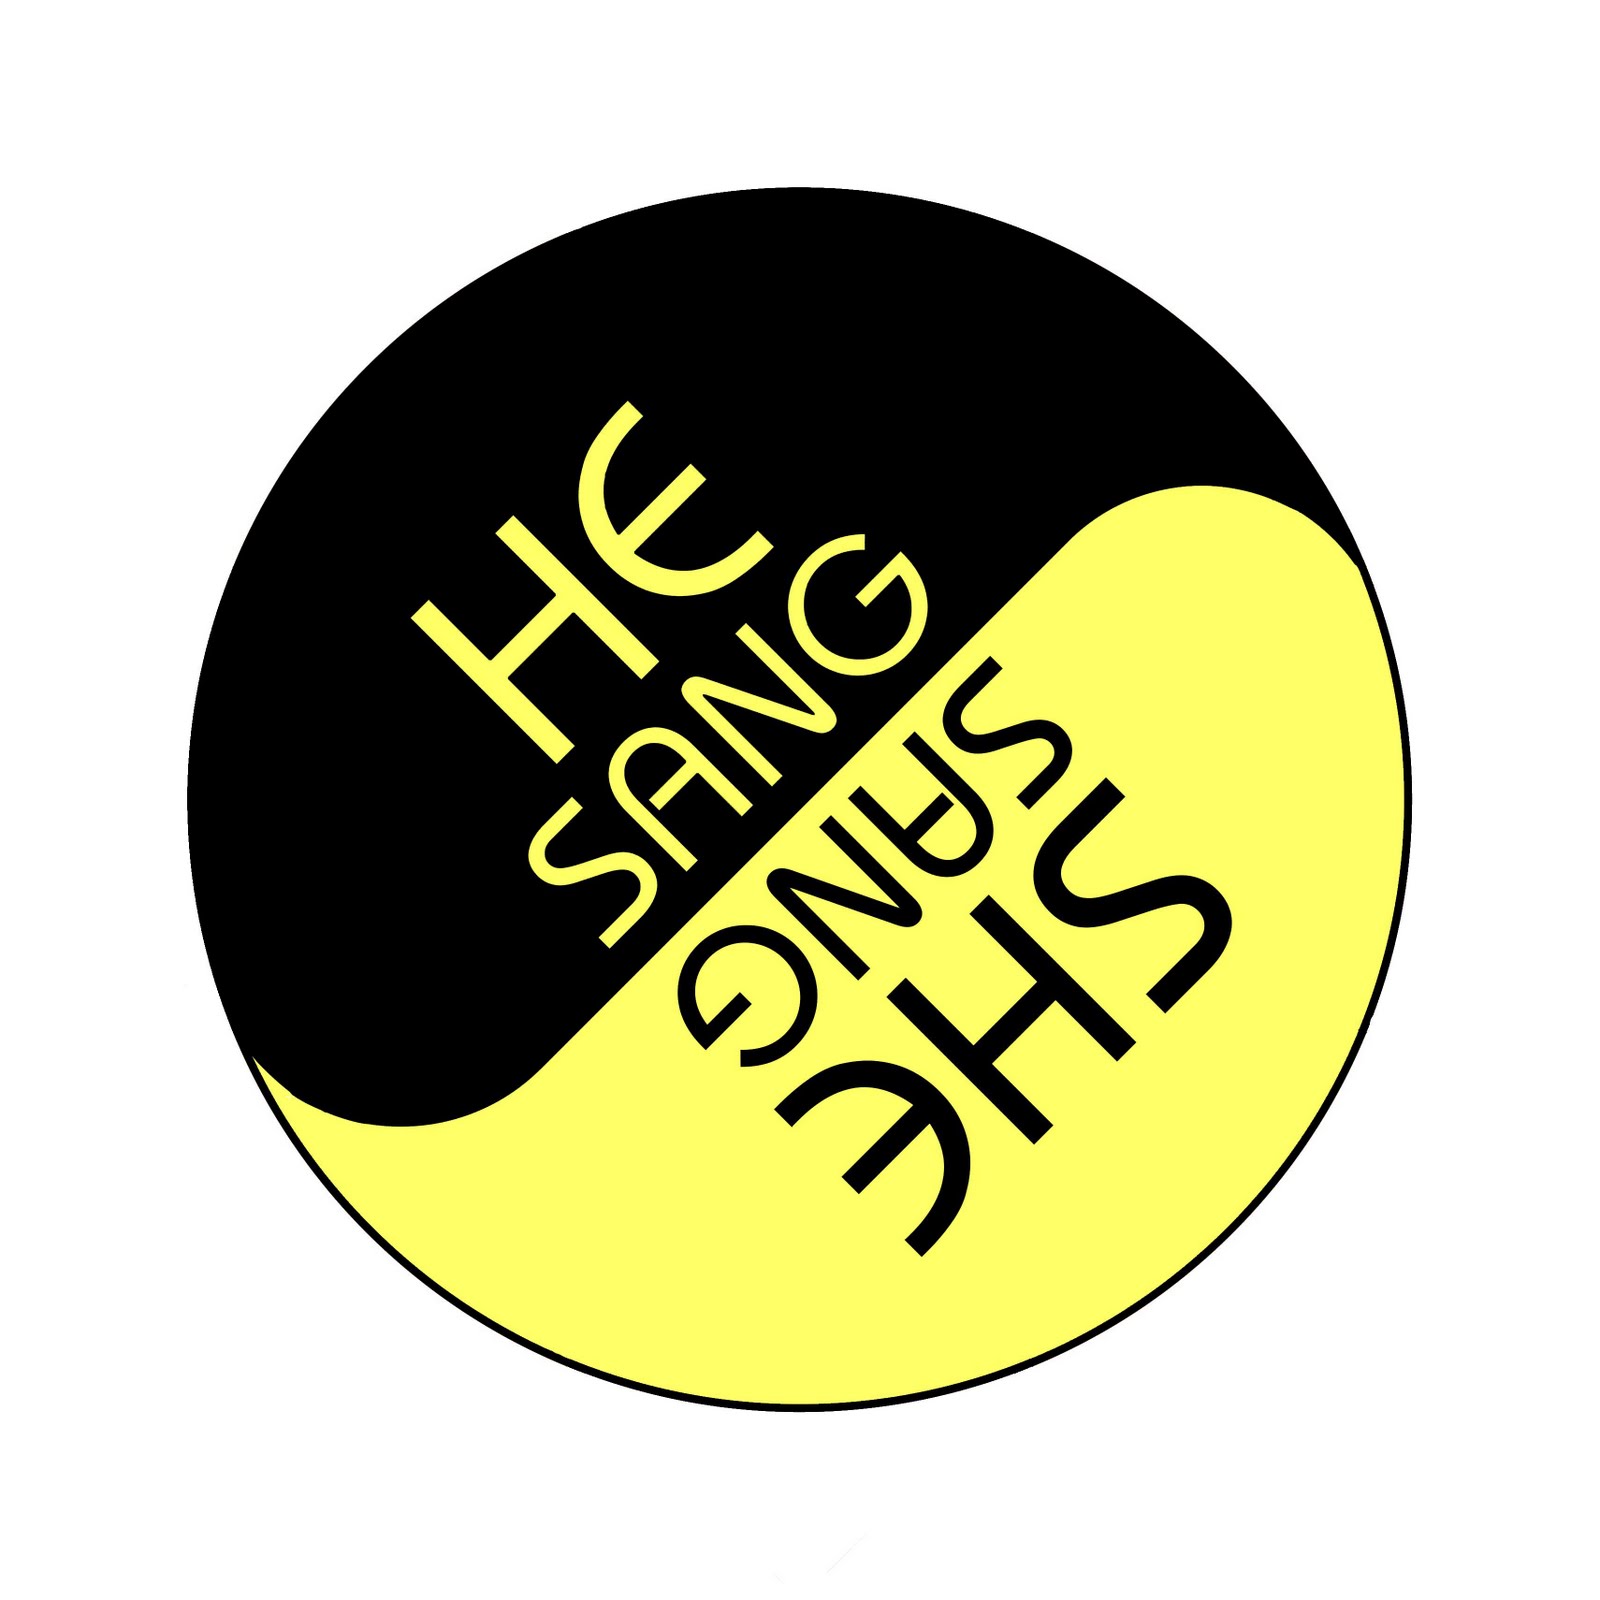 He Sang She Sang: The Evolution of the He Sang She Sang Logo